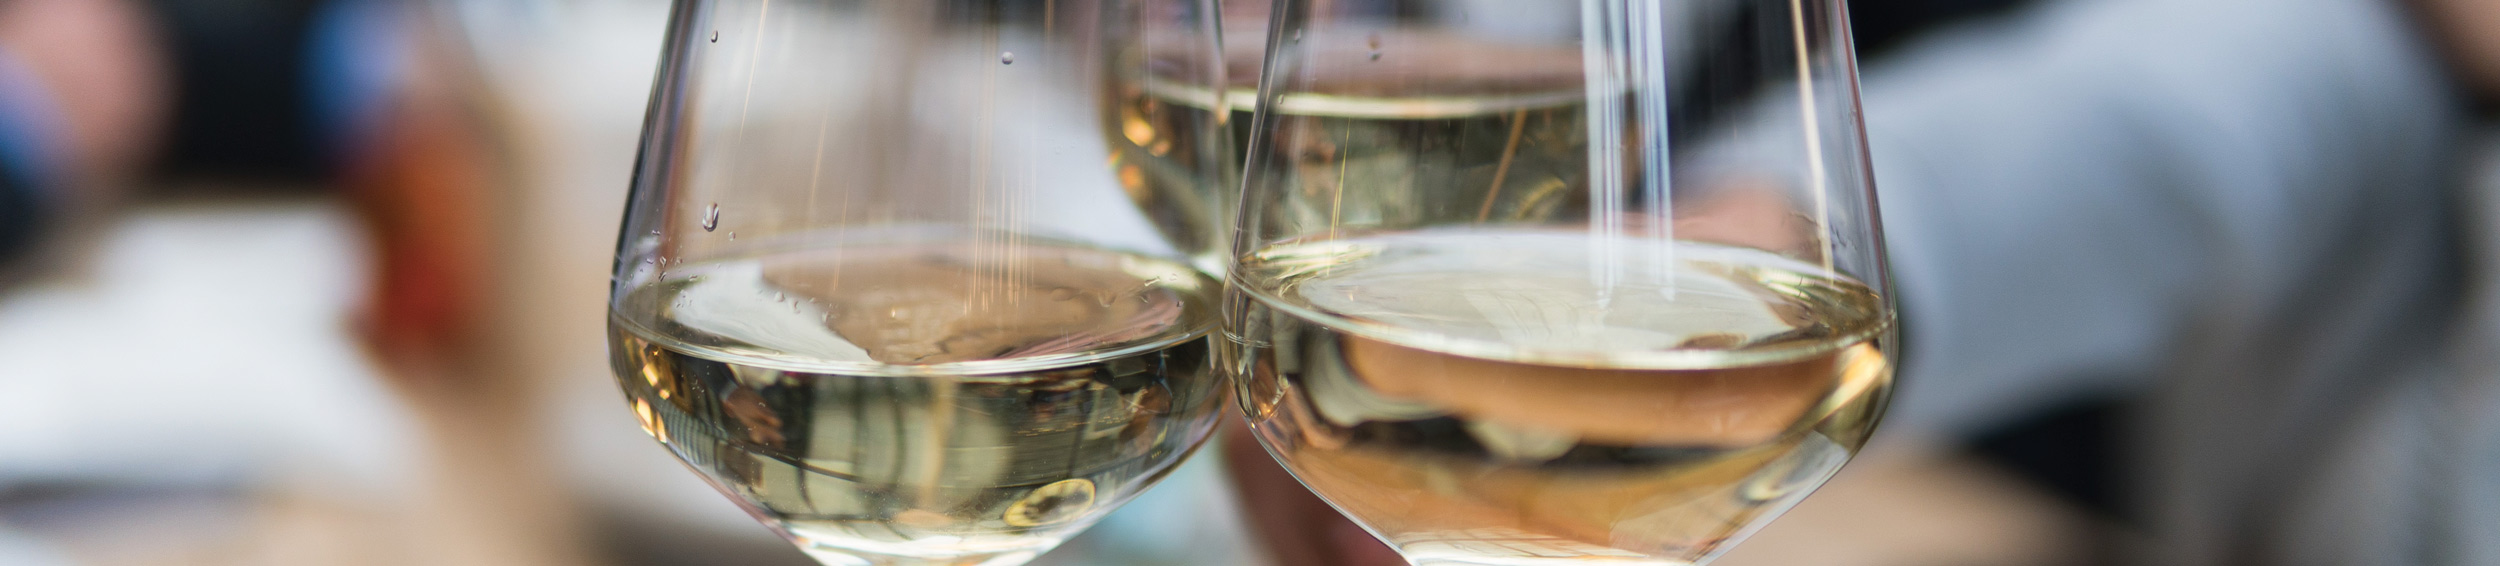 Vino Modolet Spumante Bianco Metodo Charmat | Angoris